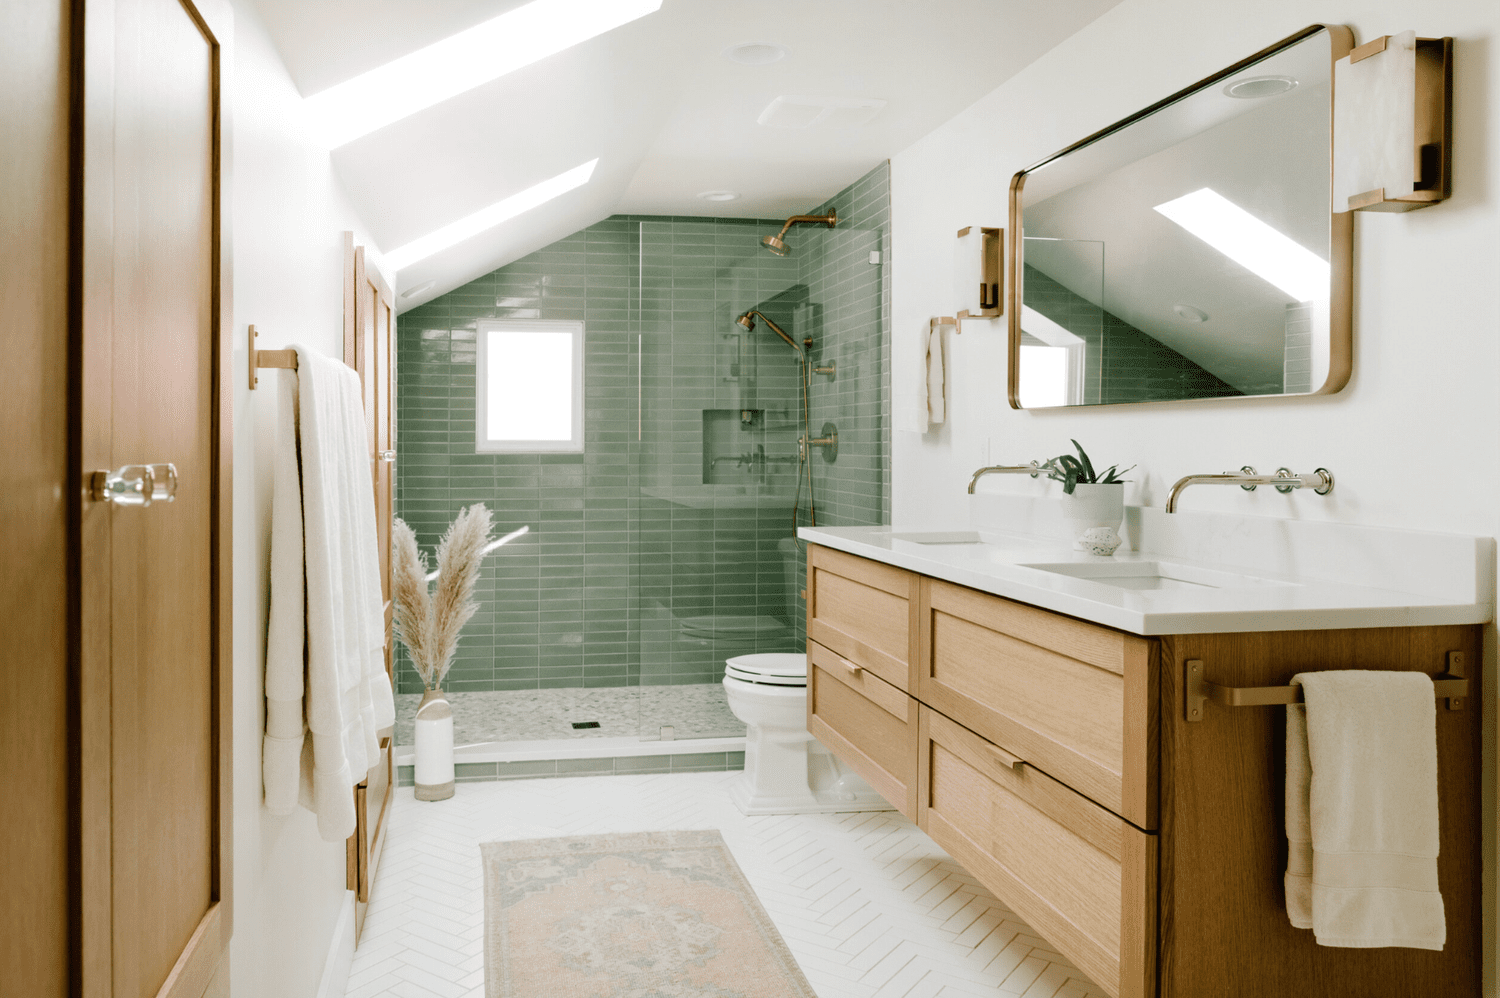 Pared de azulejos verdes en la ducha de un baño abuhardillado en blanco